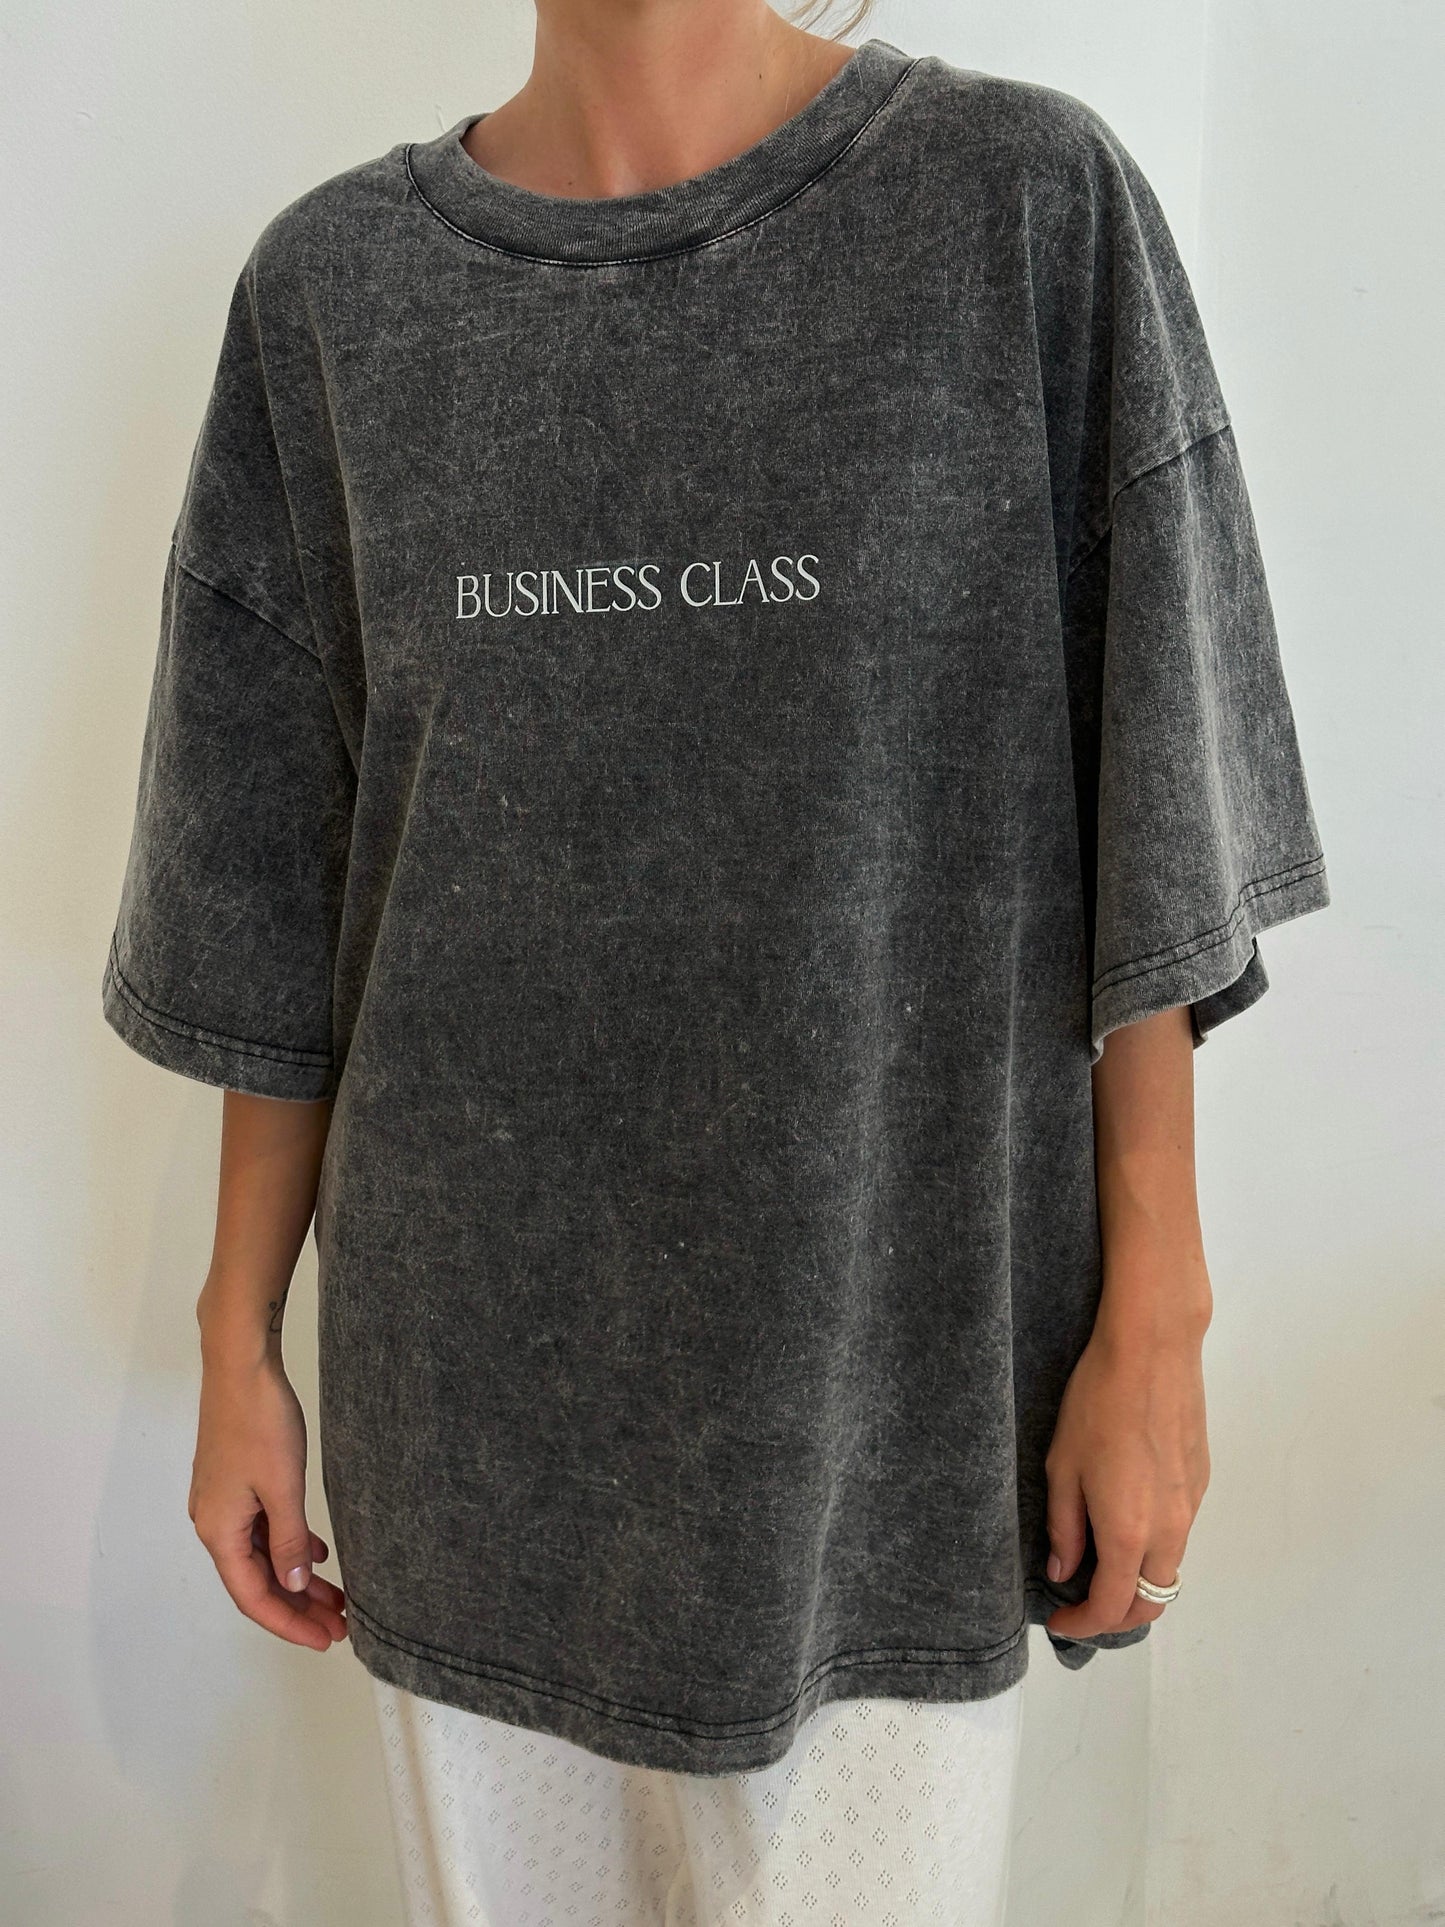 "Business class" oversized t-shirt